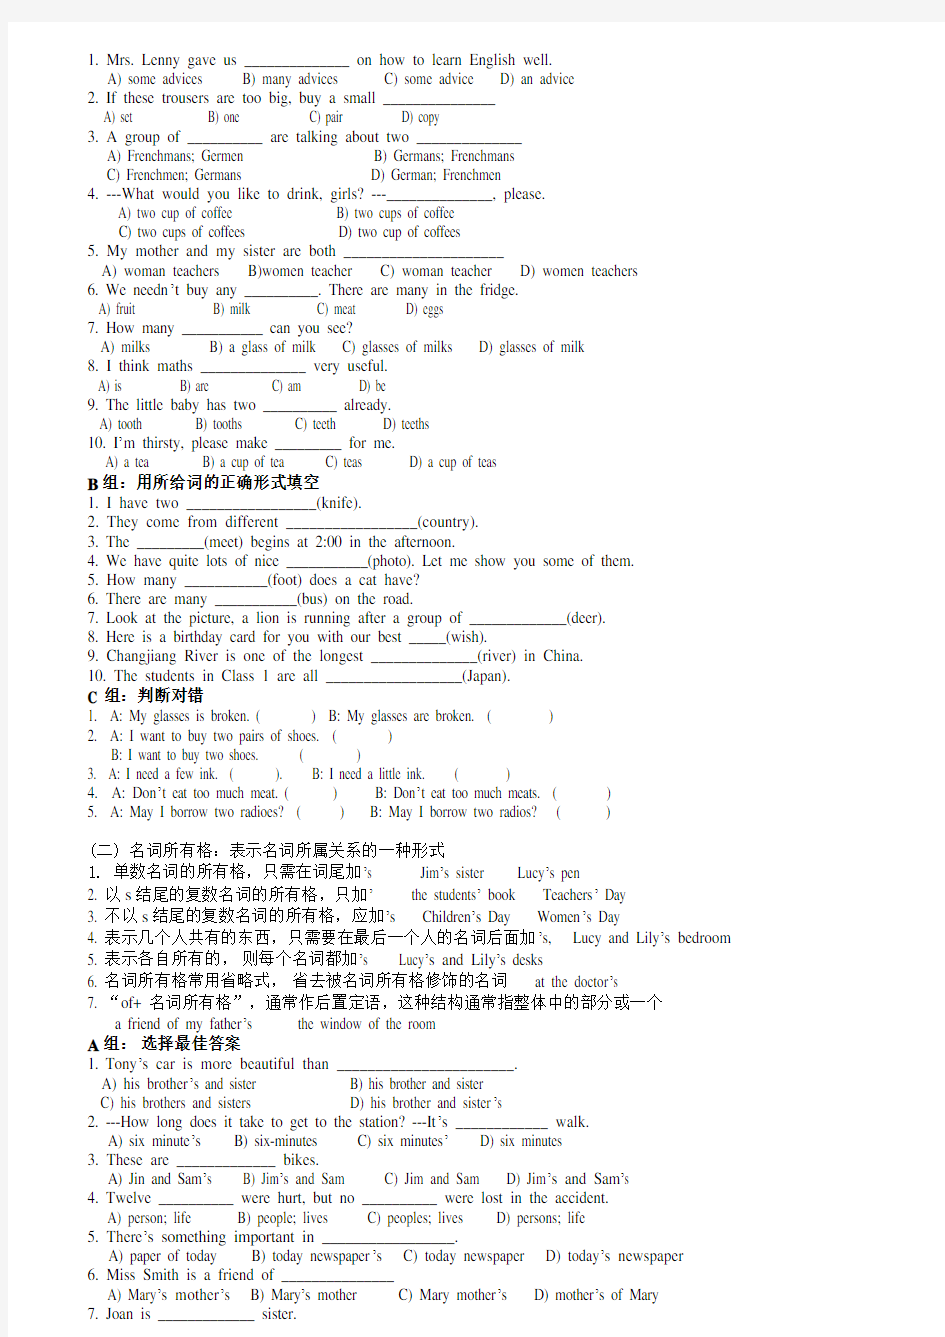 初中英语语法专题资料(含讲义与练习题)